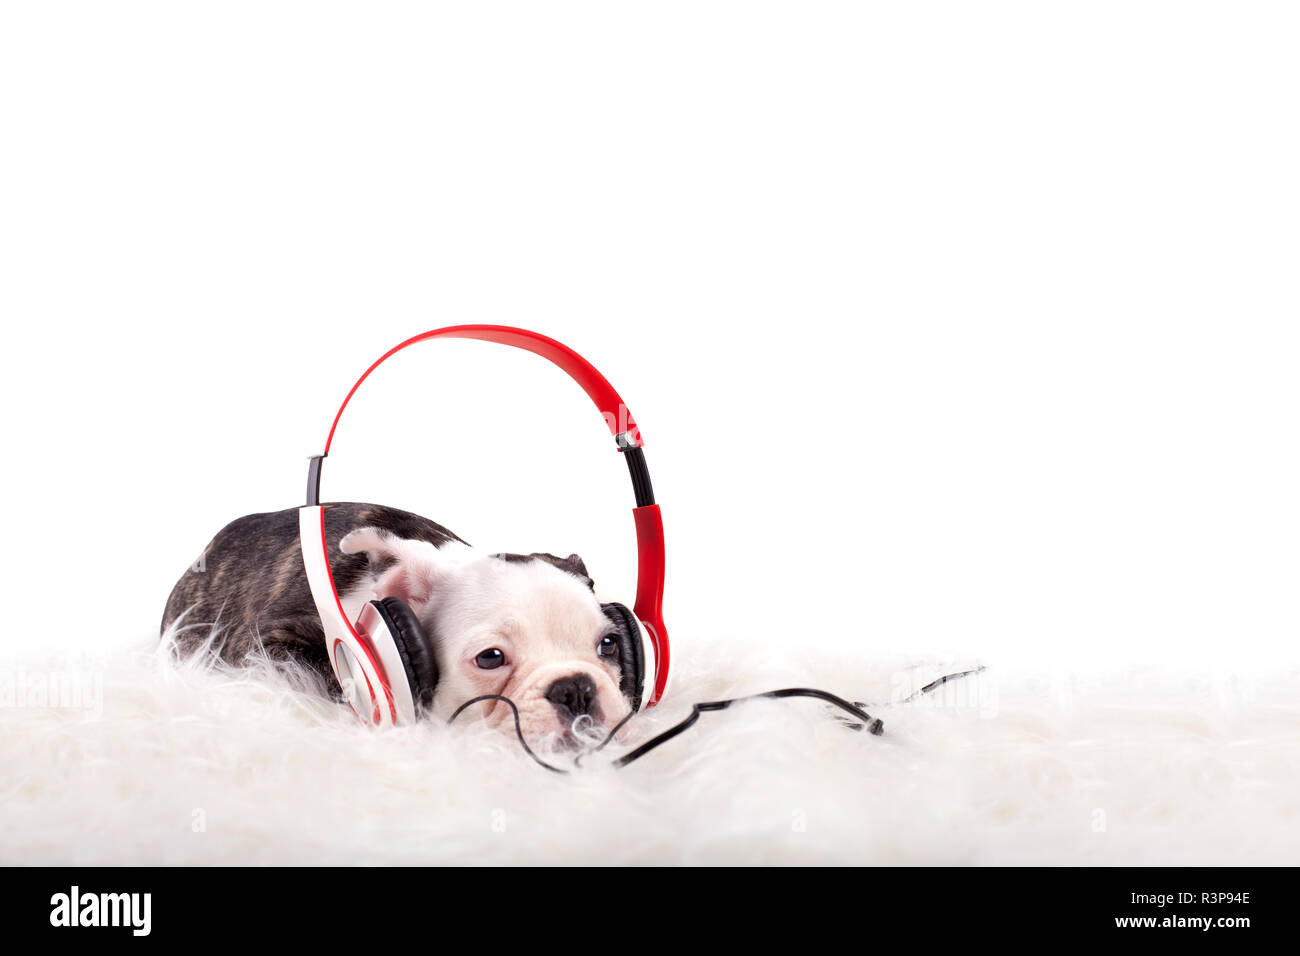 puppy with headphones Stock Photo